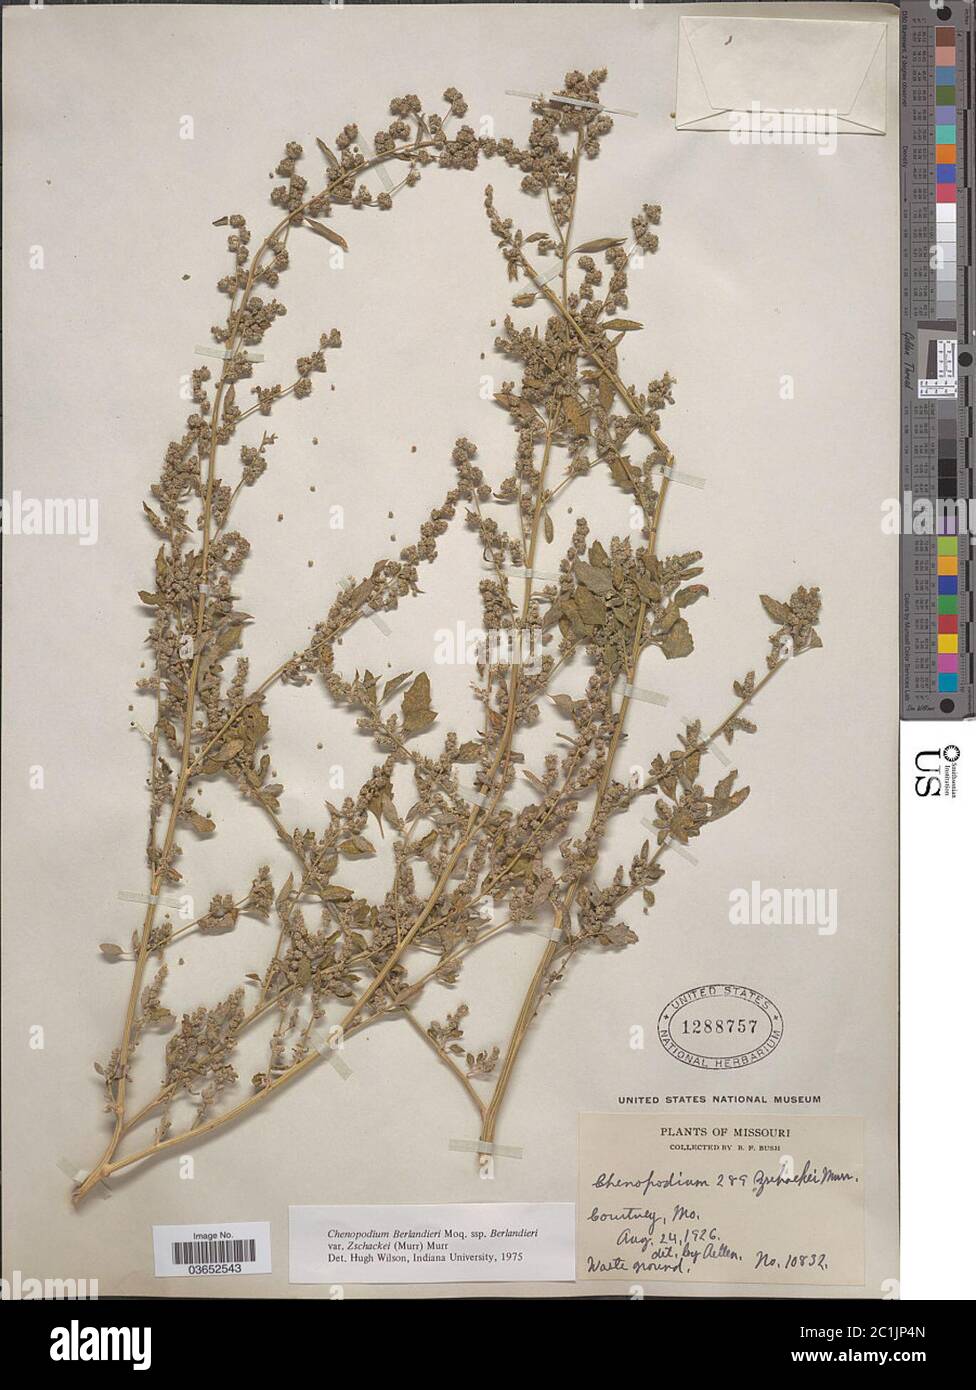 Chenopodium berlandieri subsp zschackei var typicum Chenopodium berlandieri subsp zschackei var typicum. Stock Photo